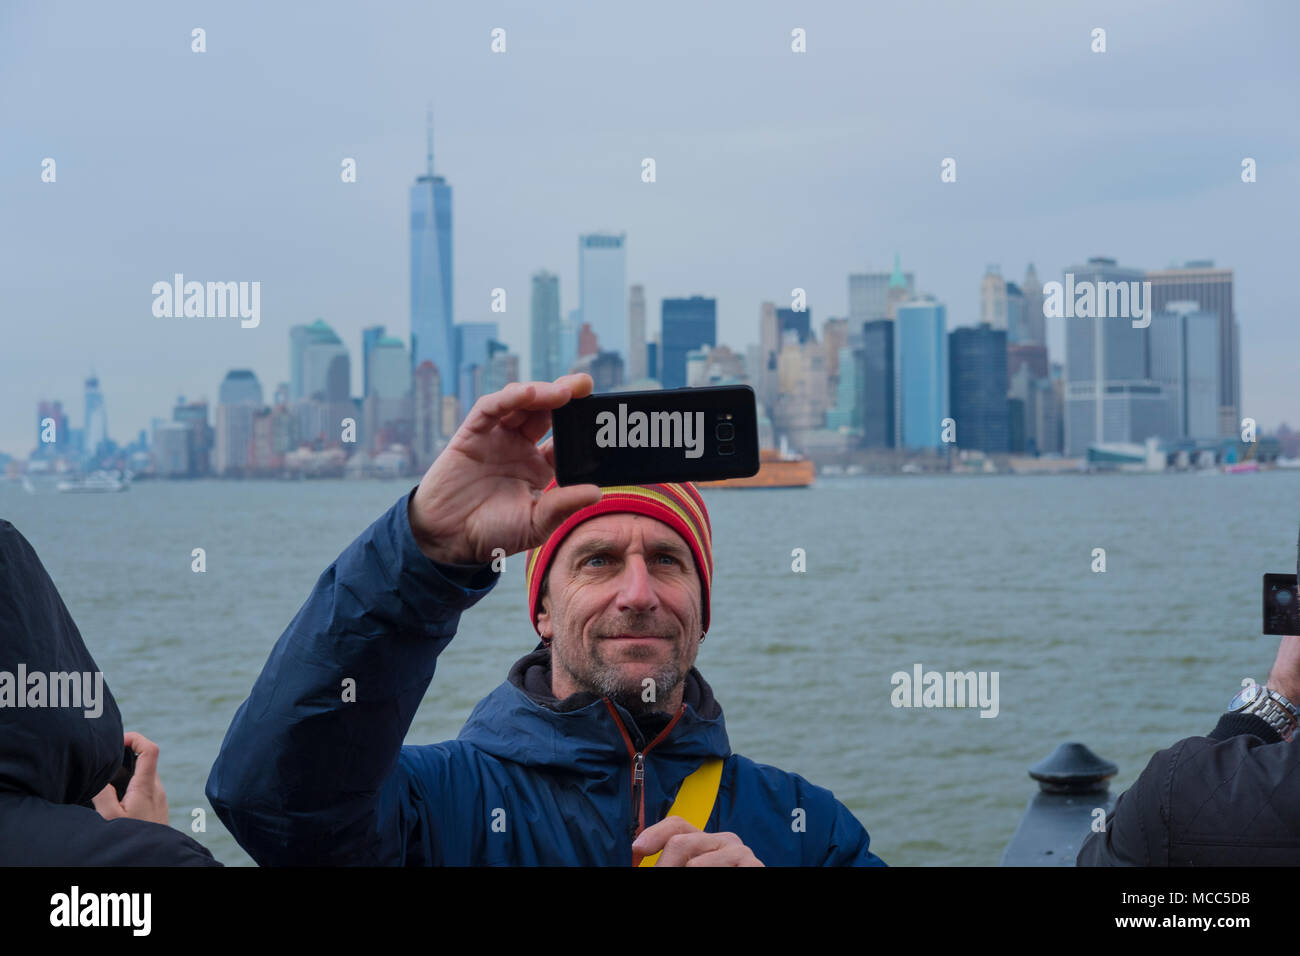 Staten Island : Selfies ce monsieur semble heureux avec son tir de Manhattan qu'il revient de Staten Island sur le ferry, avril 2018. Banque D'Images